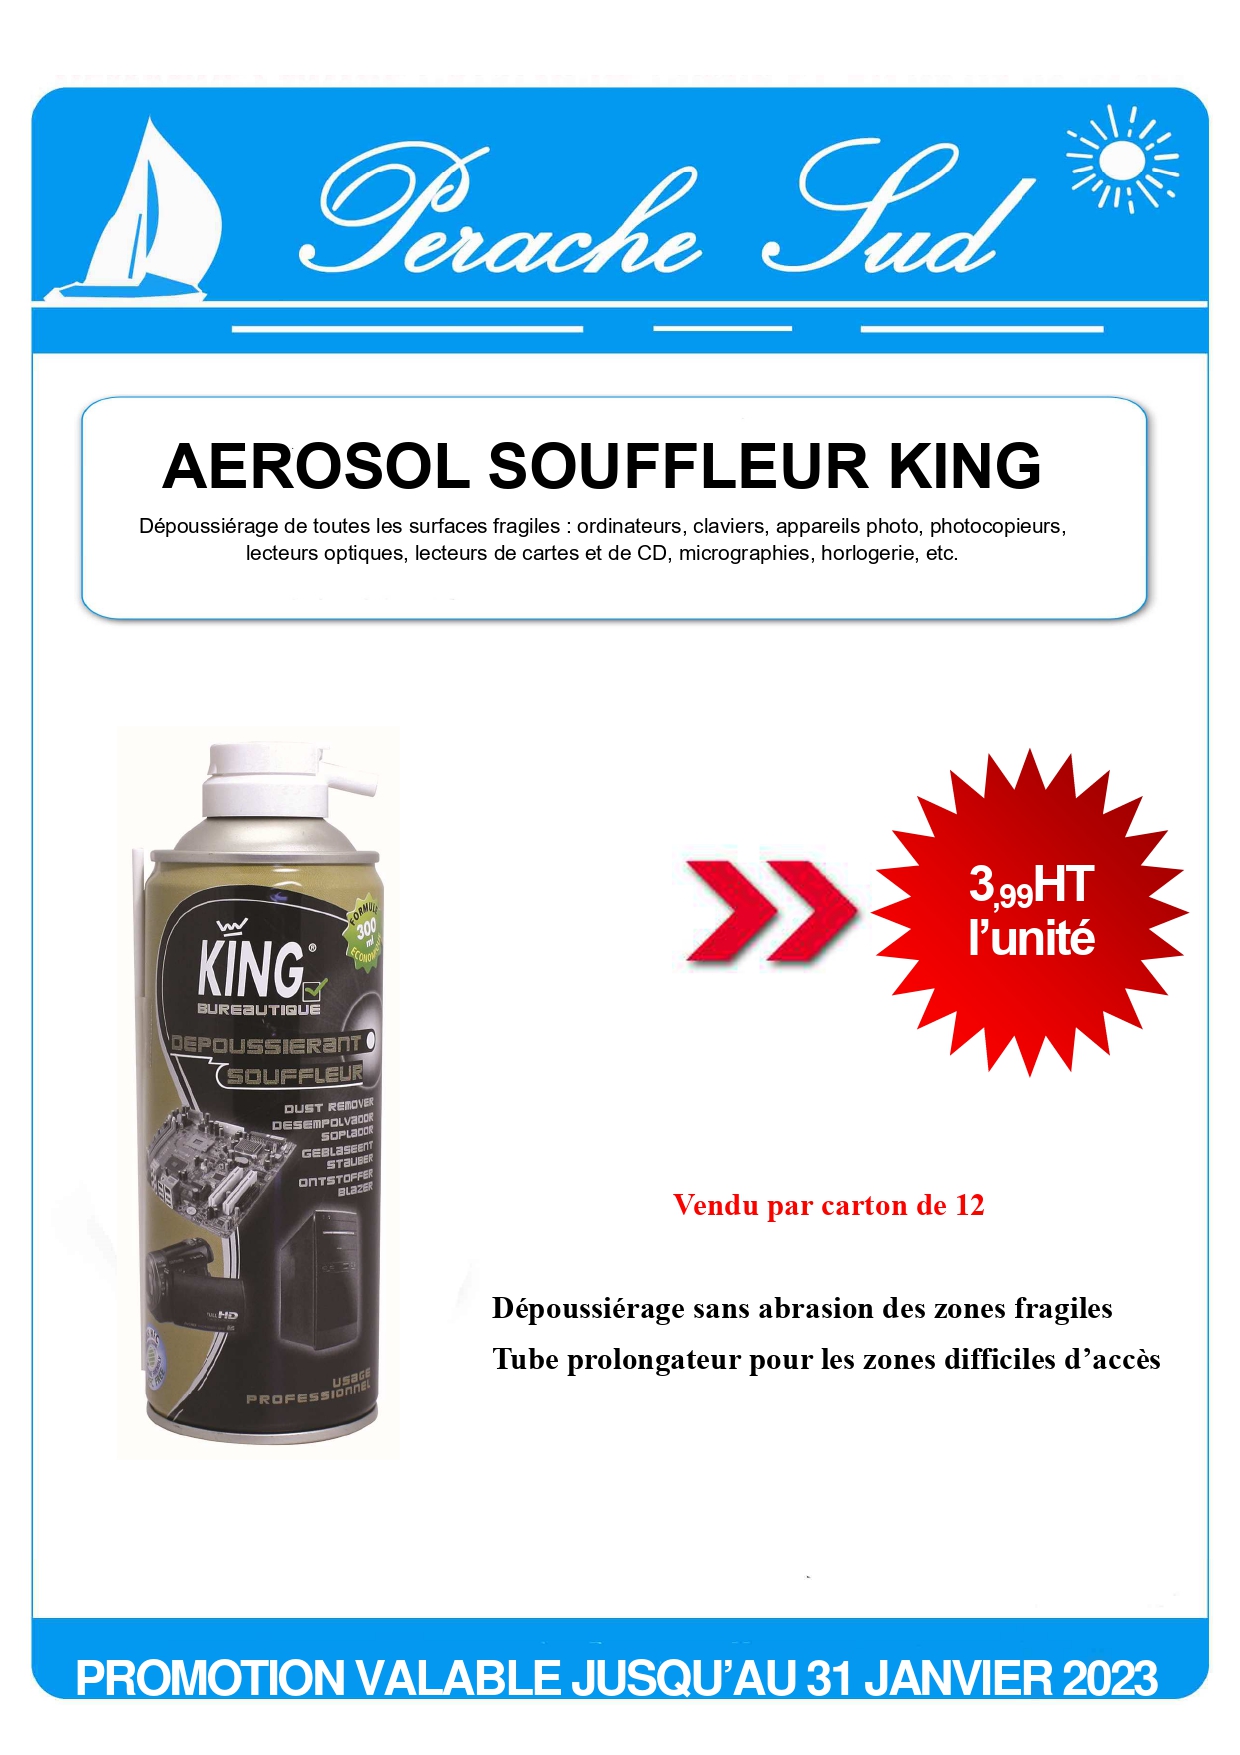 Promotion Aérosol souffleur king